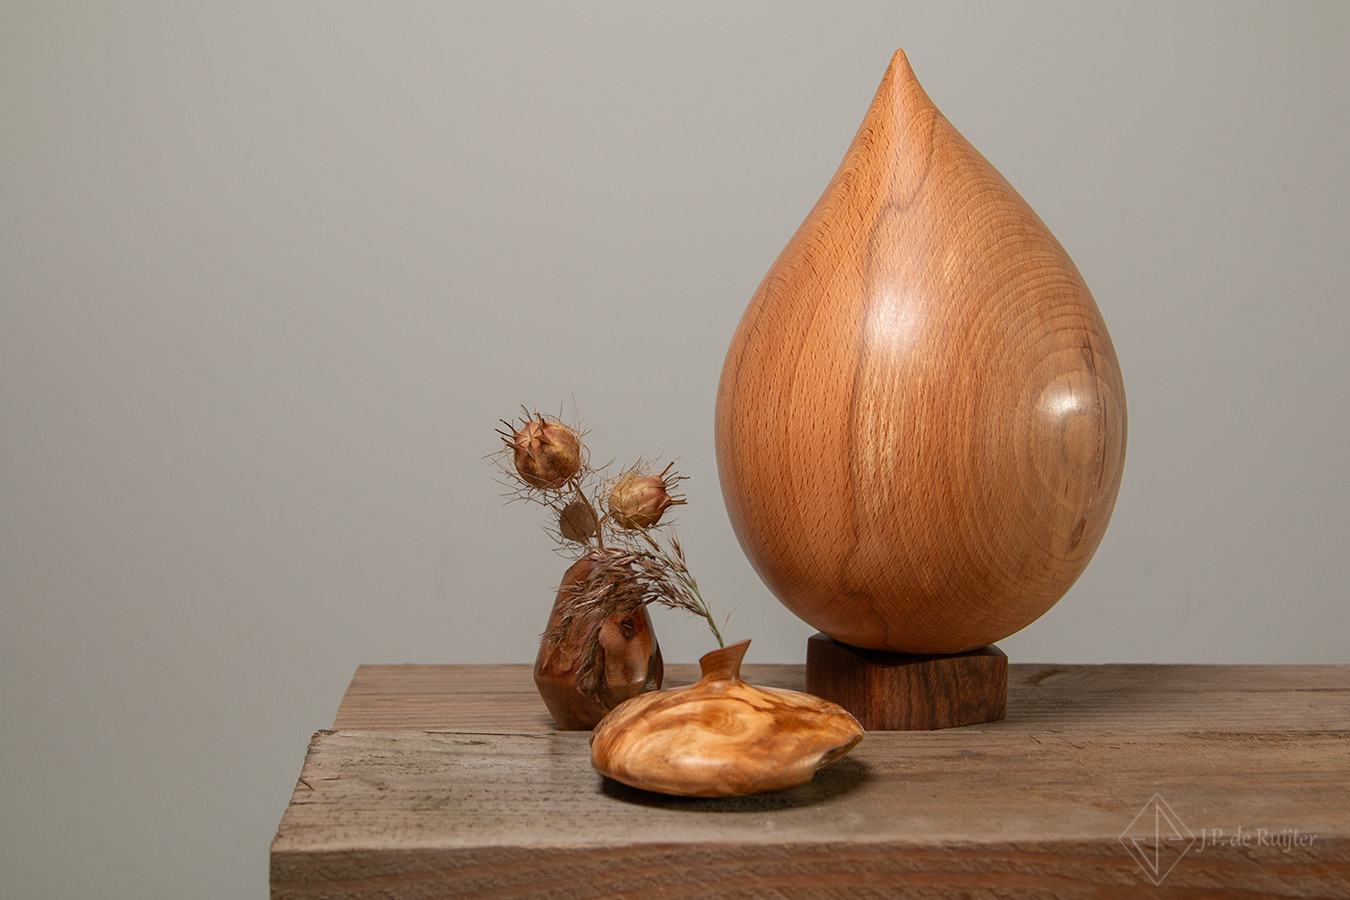 Urn van beuken hout in ddruppel vorm. Daarnaast twee miniatuur vaasjes voor een klein droog bloempje.